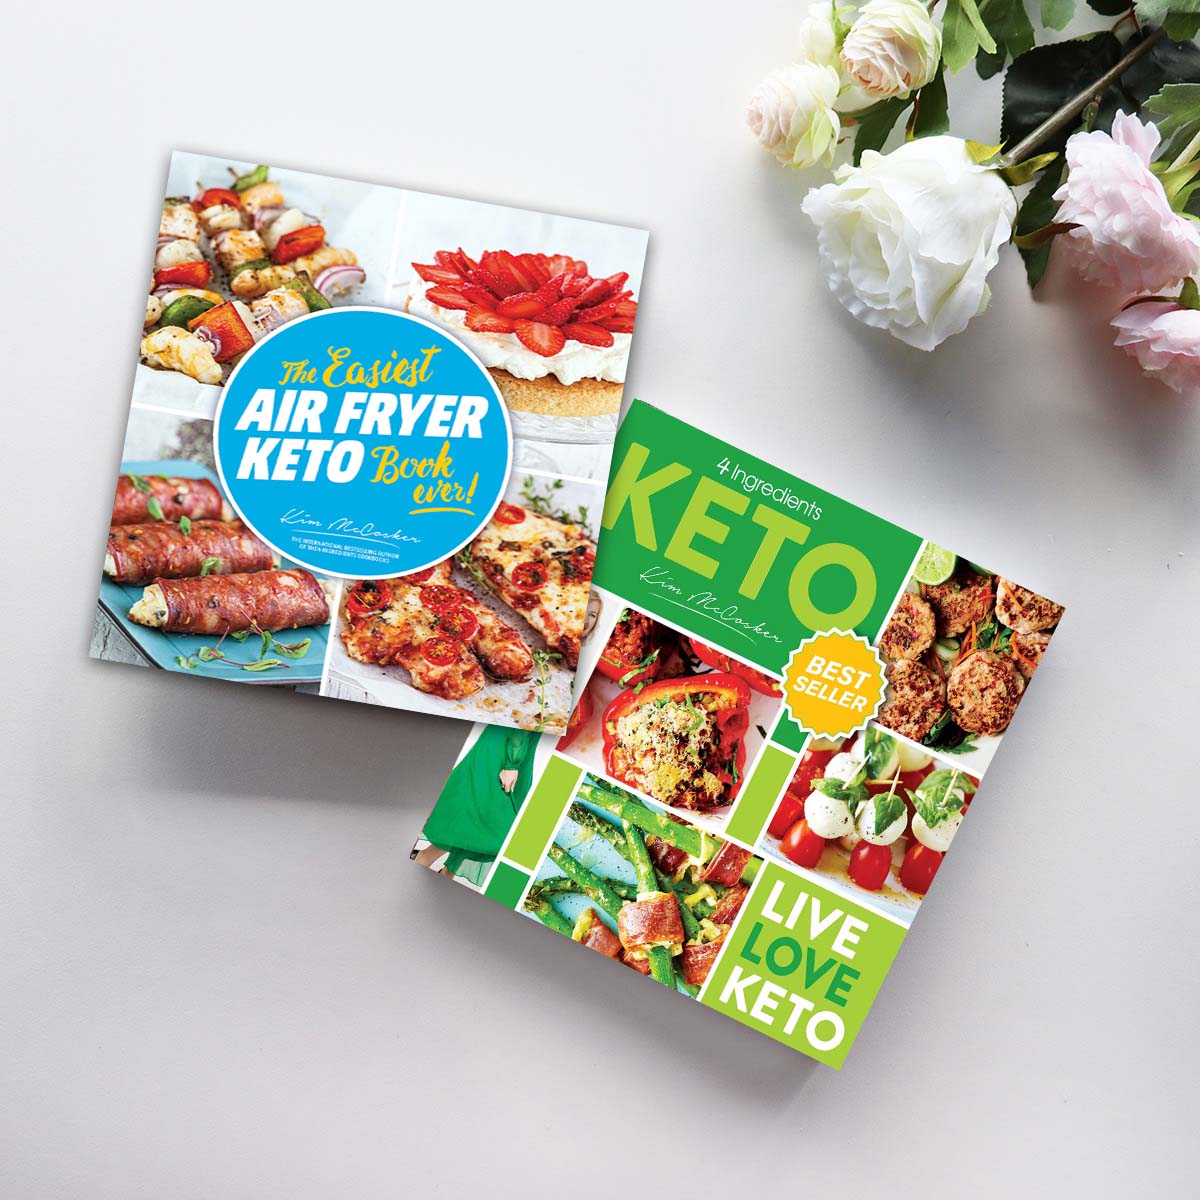 4 Ingredients KETO + The Easiest Air Fryer KETO Book ever